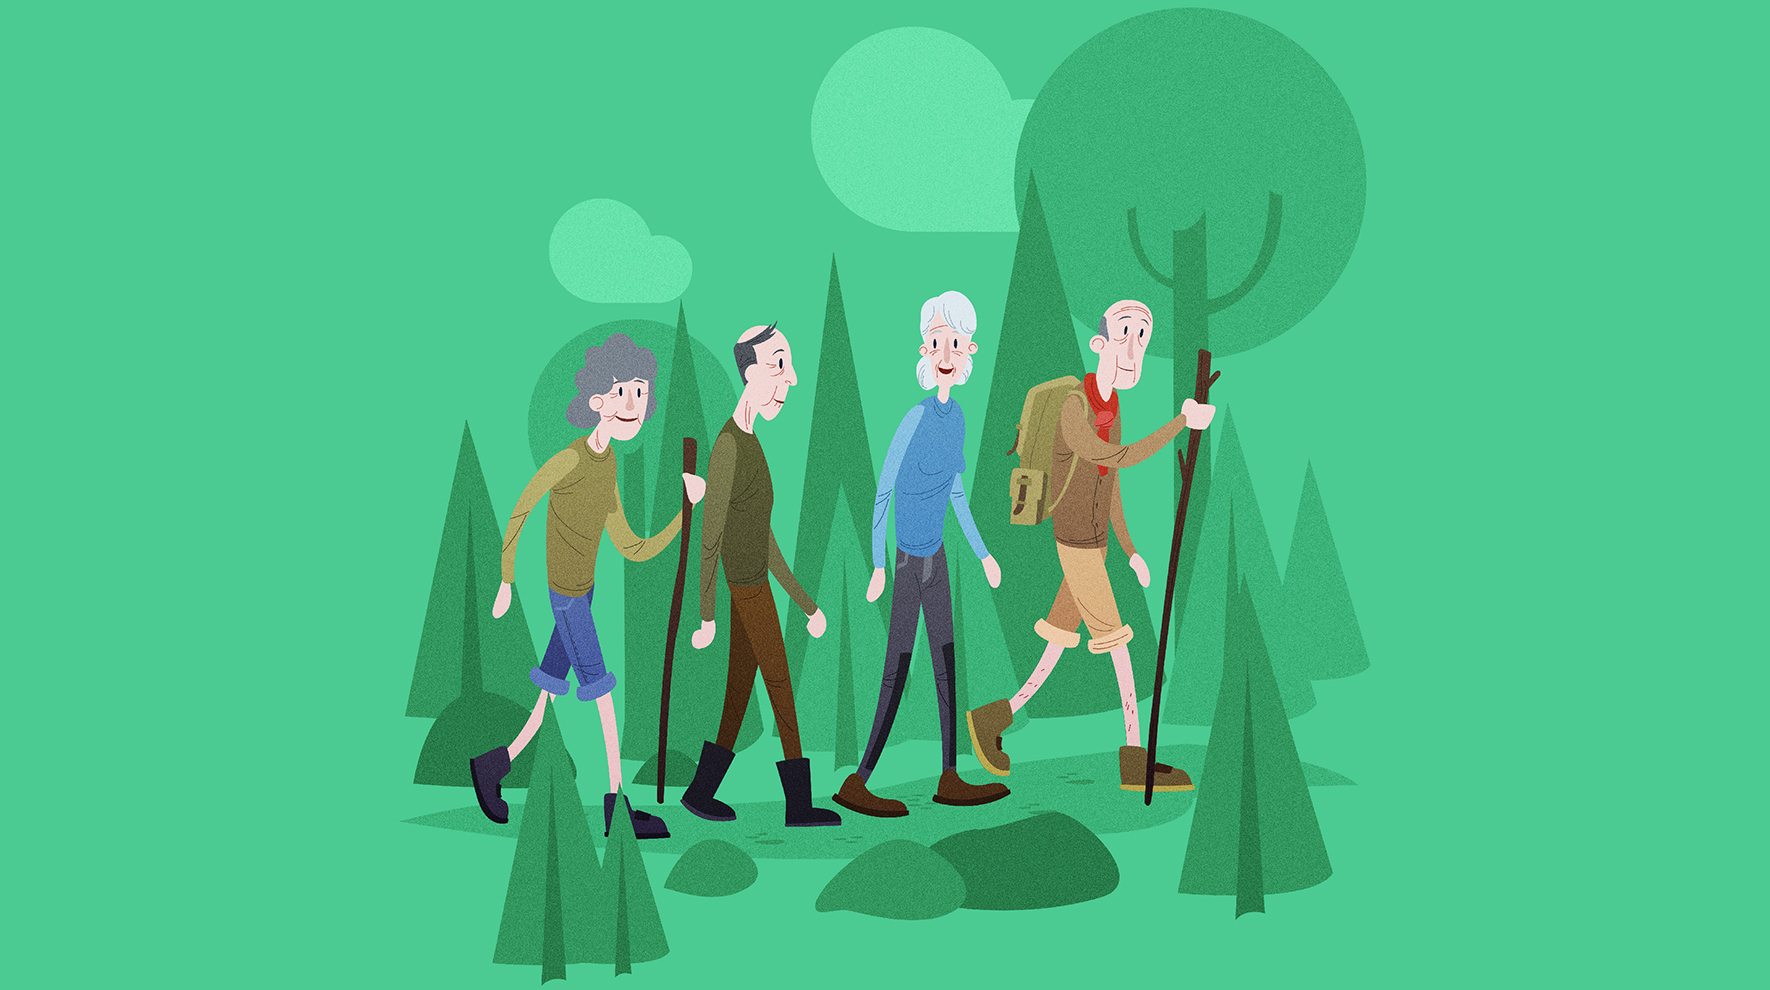 Fire eldre mennesker går tur i skogen. Illustrasjon.